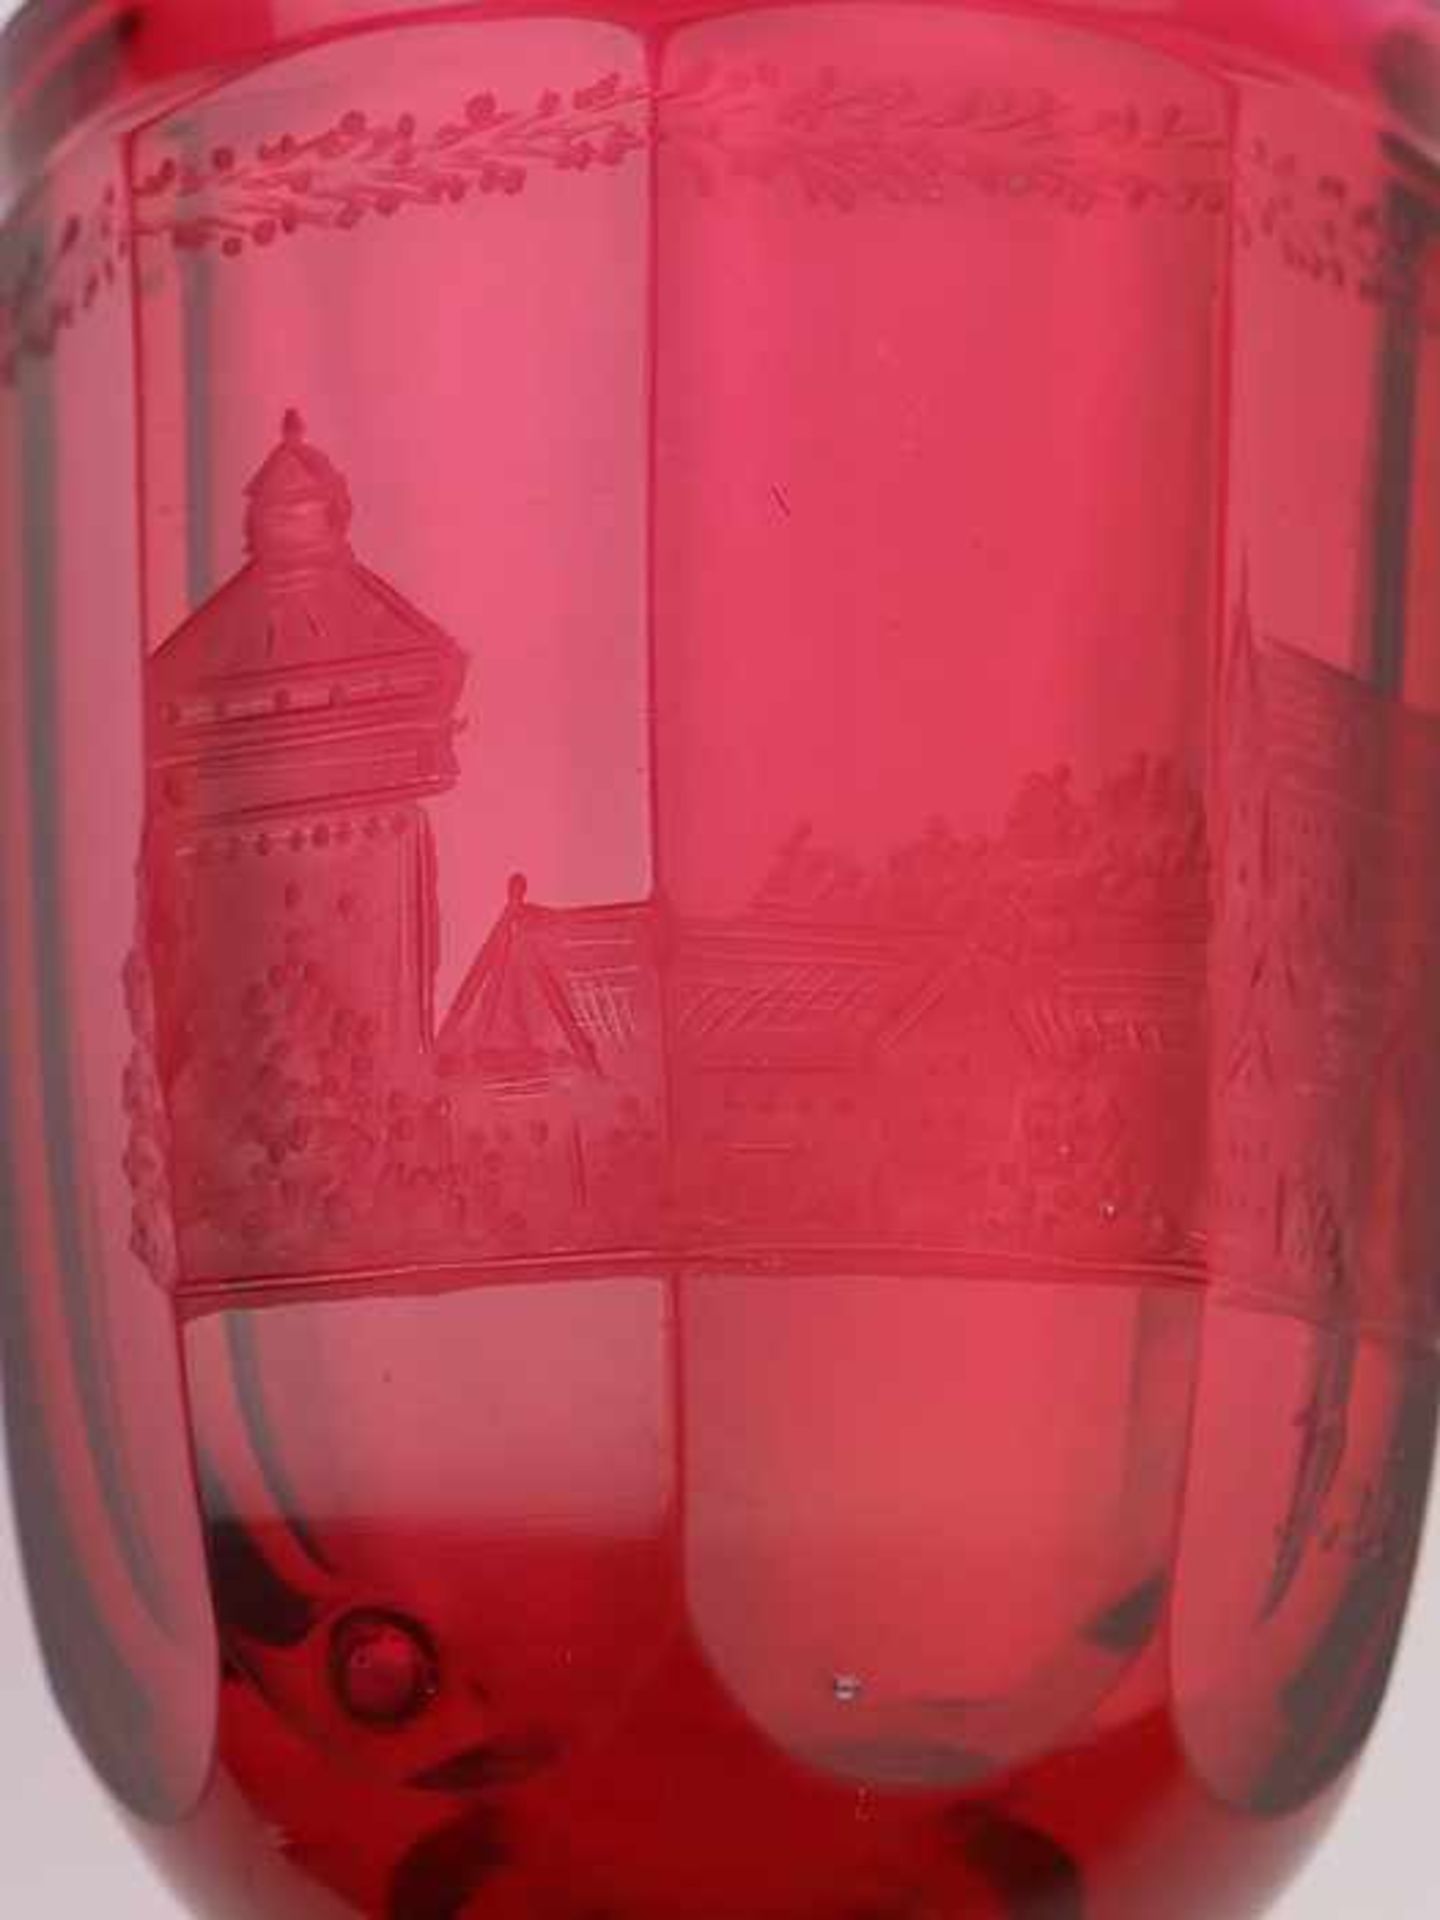 Andenkenbecher19. Jh., farbloses u. rubinfarbenes Glas, runder, zweifach gewulsteter Stand, konkaver - Bild 5 aus 8